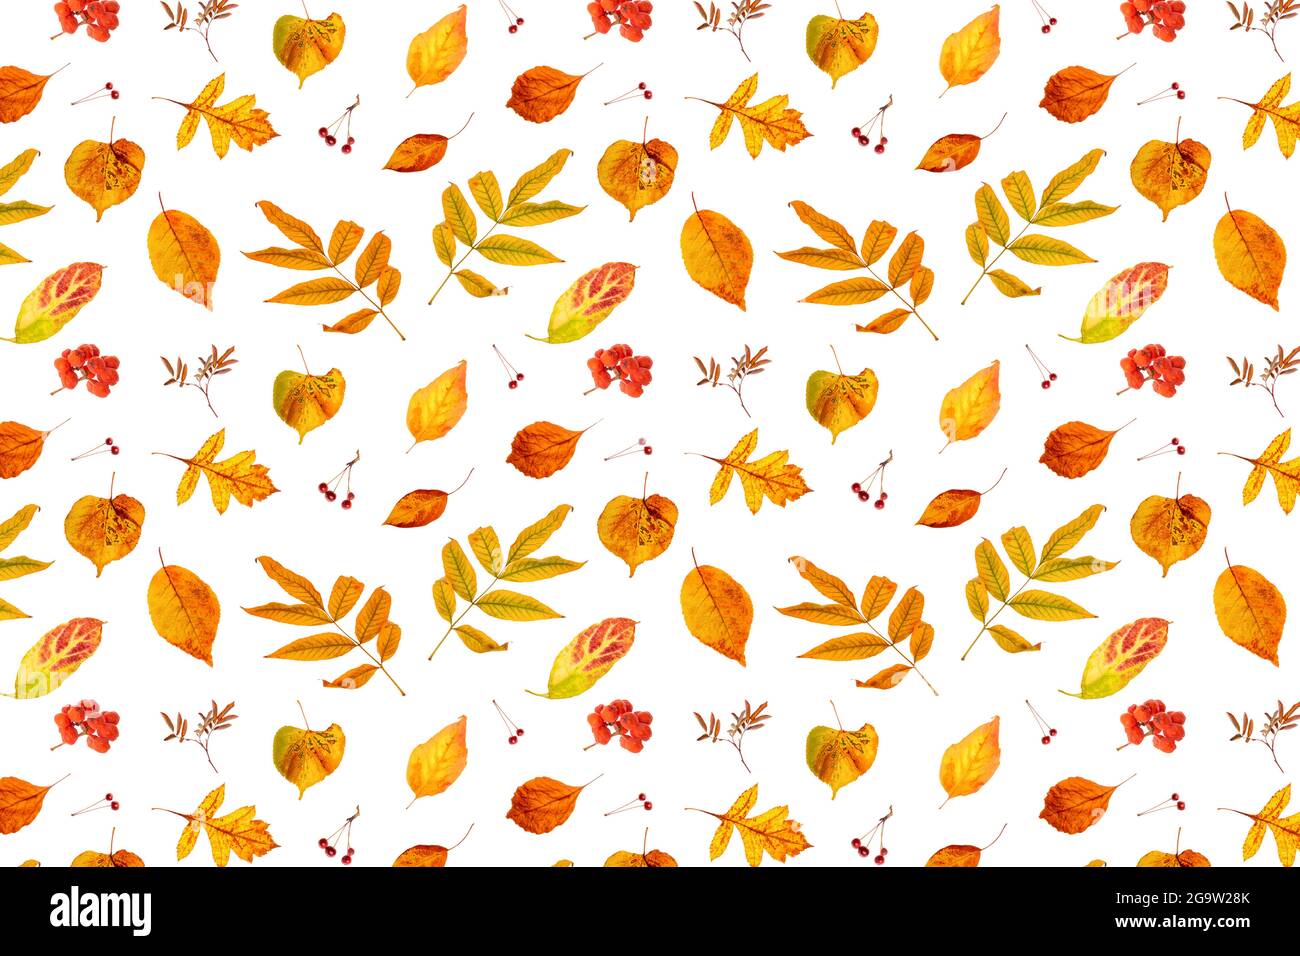 Motif de feuilles d'automne orange naturelles et de baies sur fond blanc, comme toile de fond ou texture. Papier peint d'automne pour votre conception. Vue de dessus Flat lay. Banque D'Images